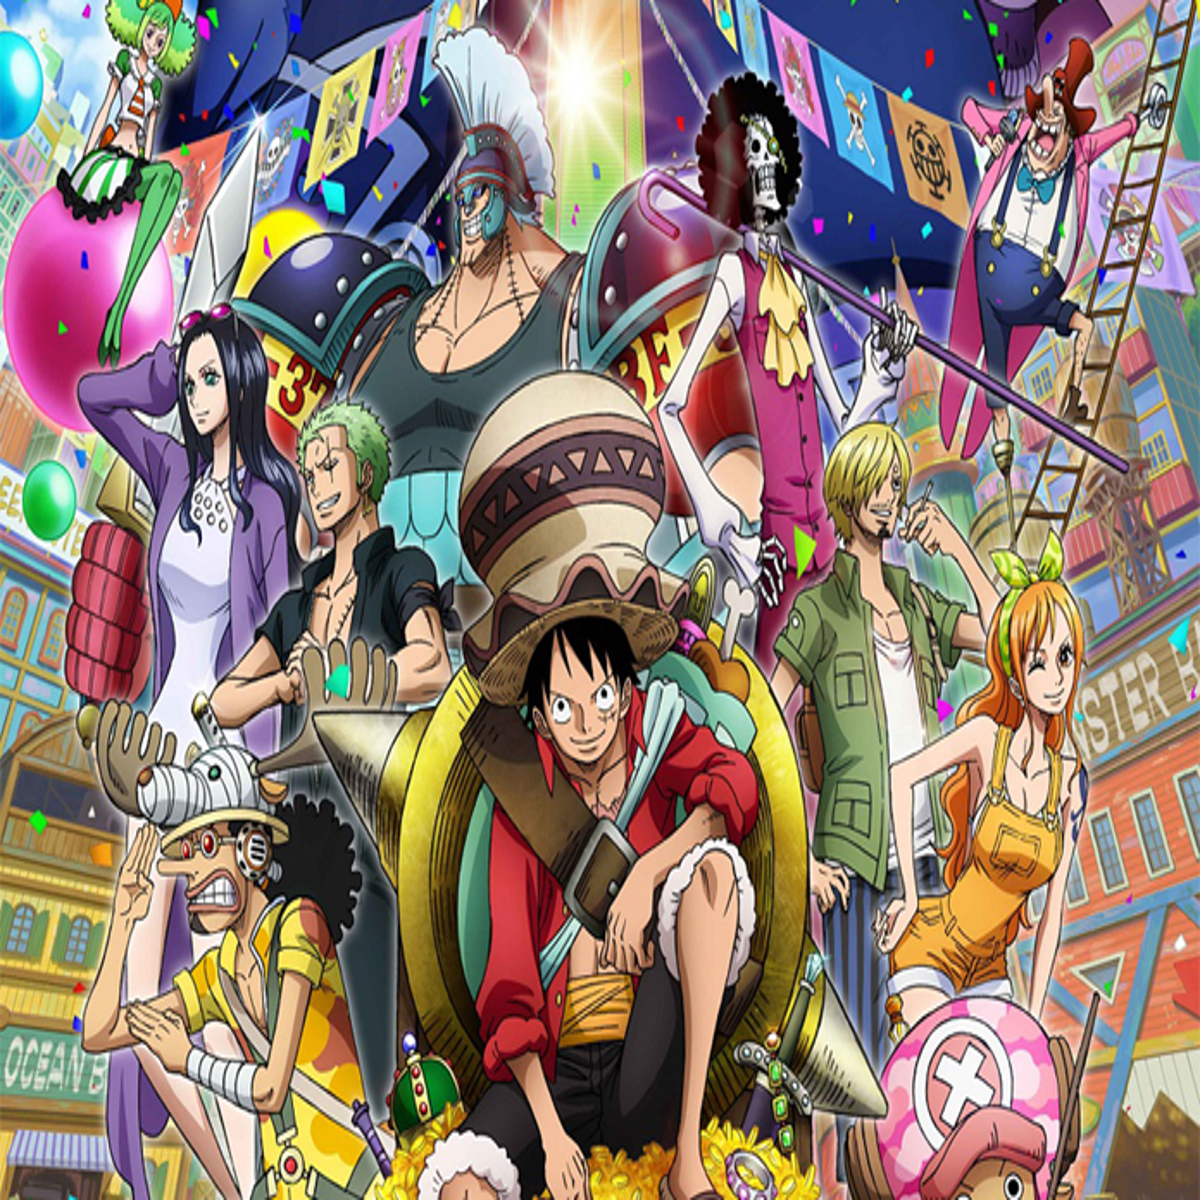 One Piece - filme - STAMPEDE - dublado - pt 04 #onepiece #animes #anim